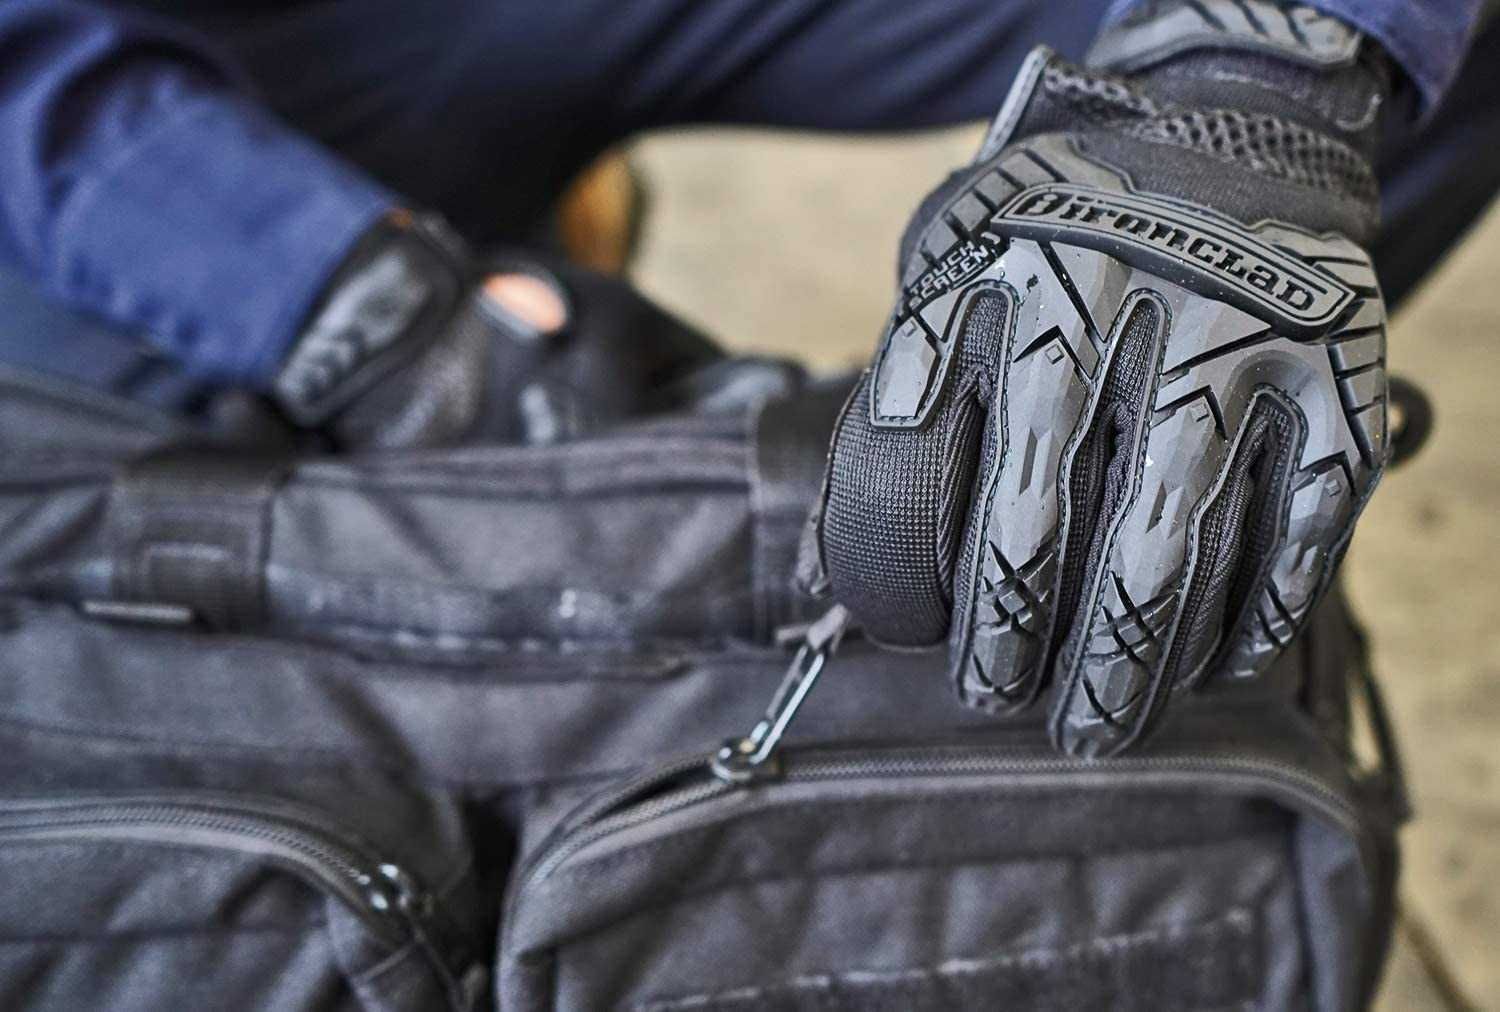 Тактические перчатки, тактичні рукавички Ironclad. США